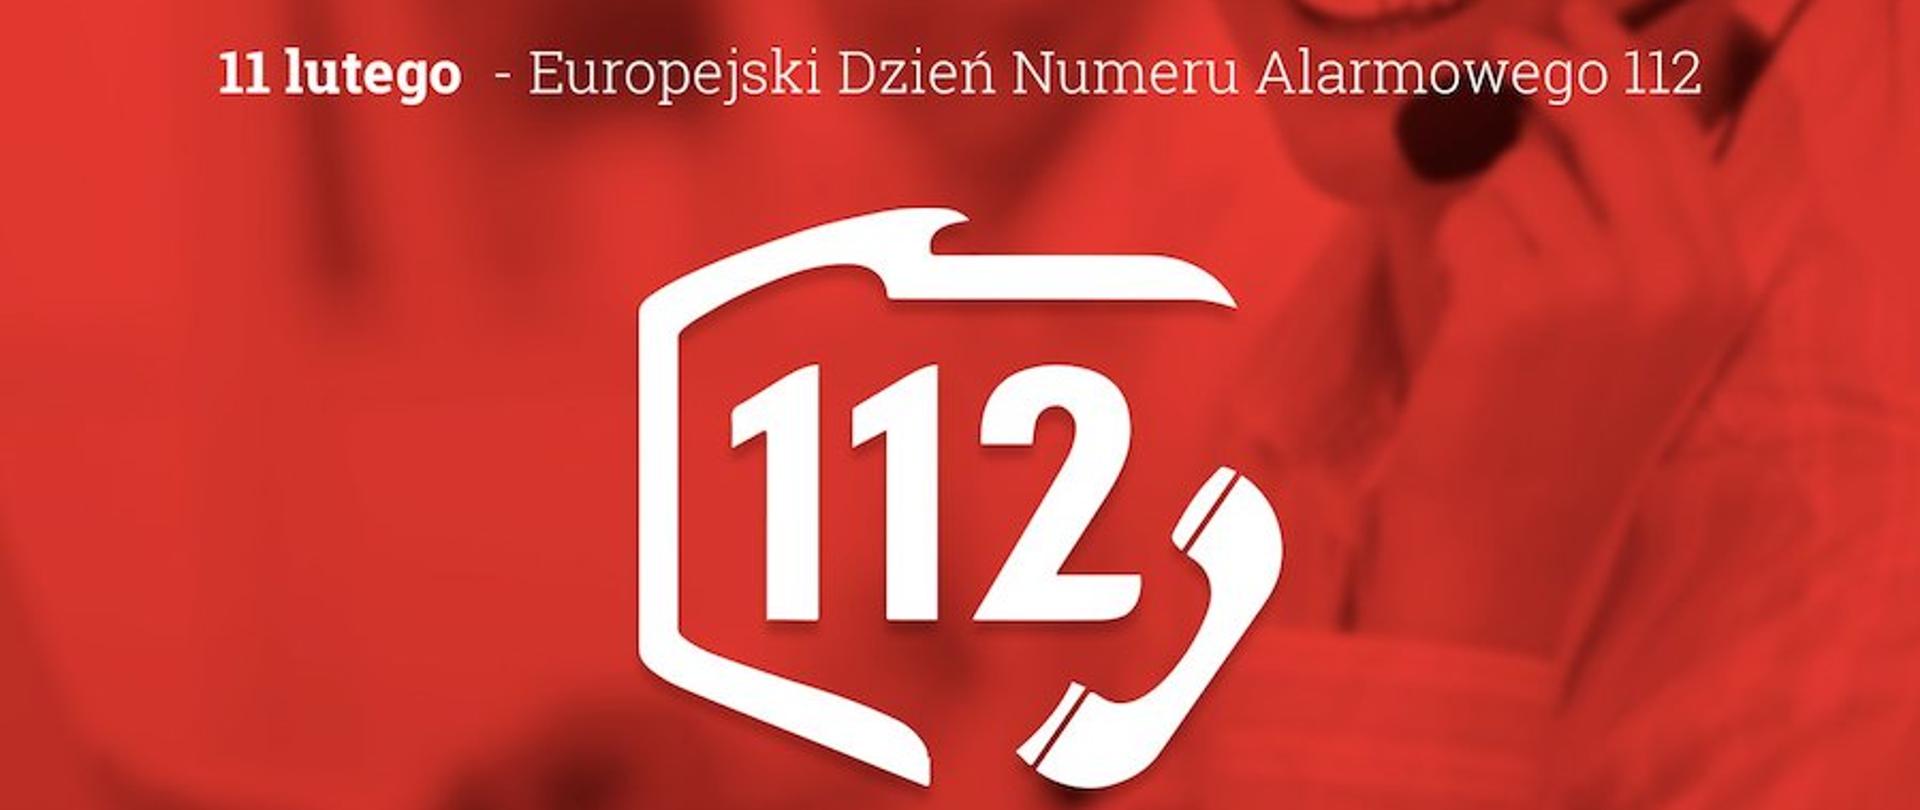 Logo numeru alarmowego 112 na czerwonym tle